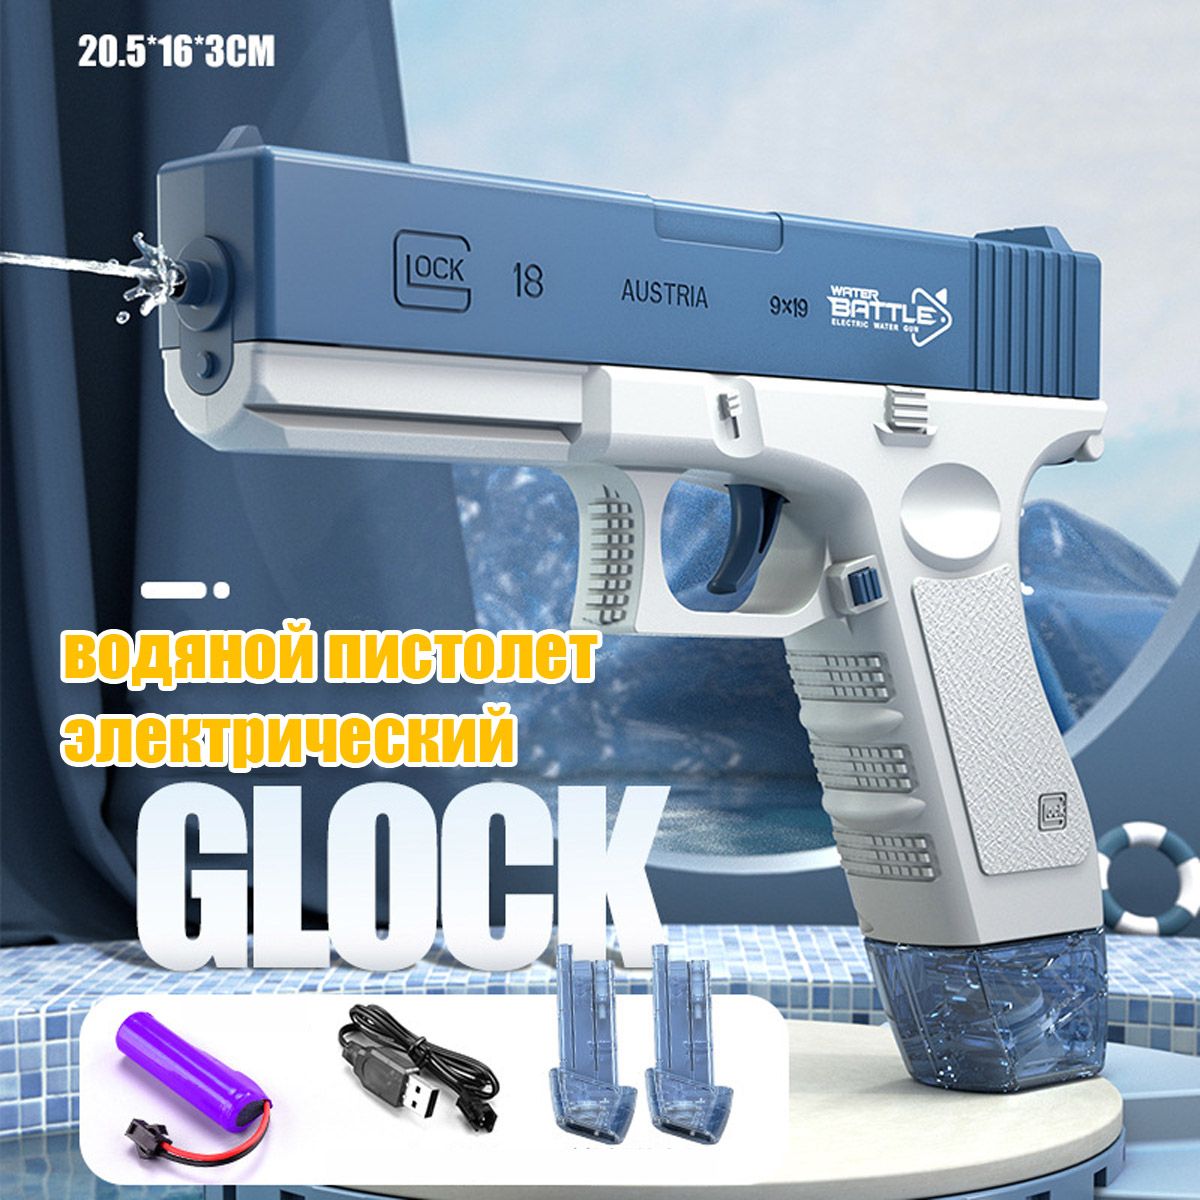 Электрический водный Пистолет игрушечный RASULEV Glok 18 на аккумуляторе